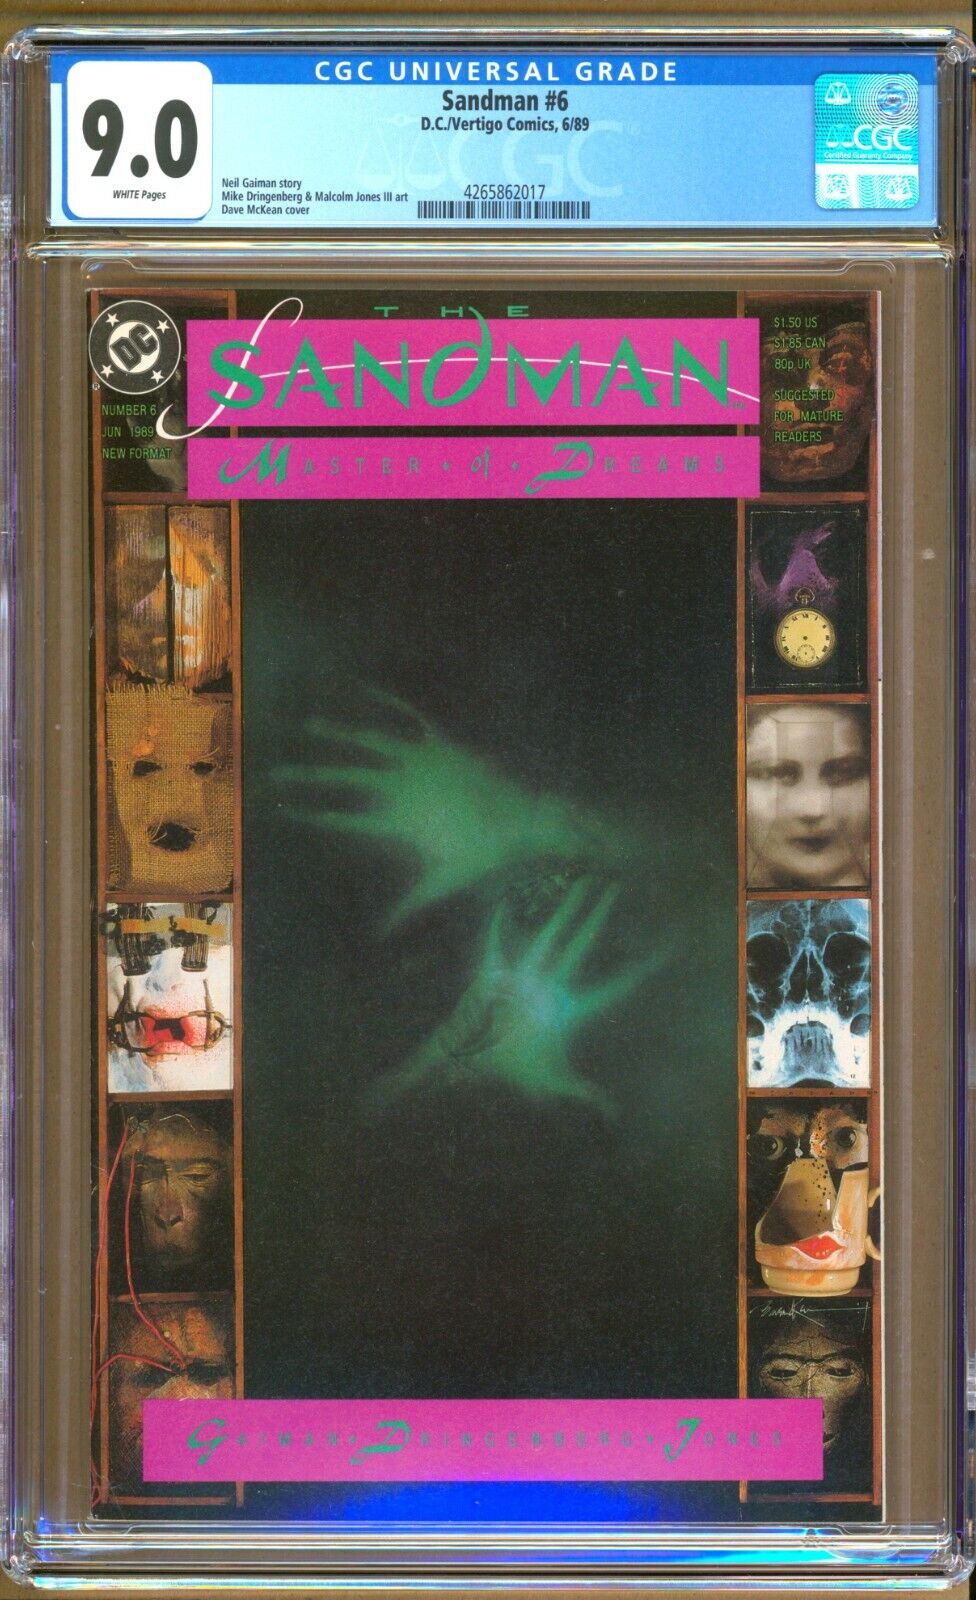 Sandman #6 (1989) CGC 9.0  WP  Gaiman - Dringenberg - McKean - Jones III